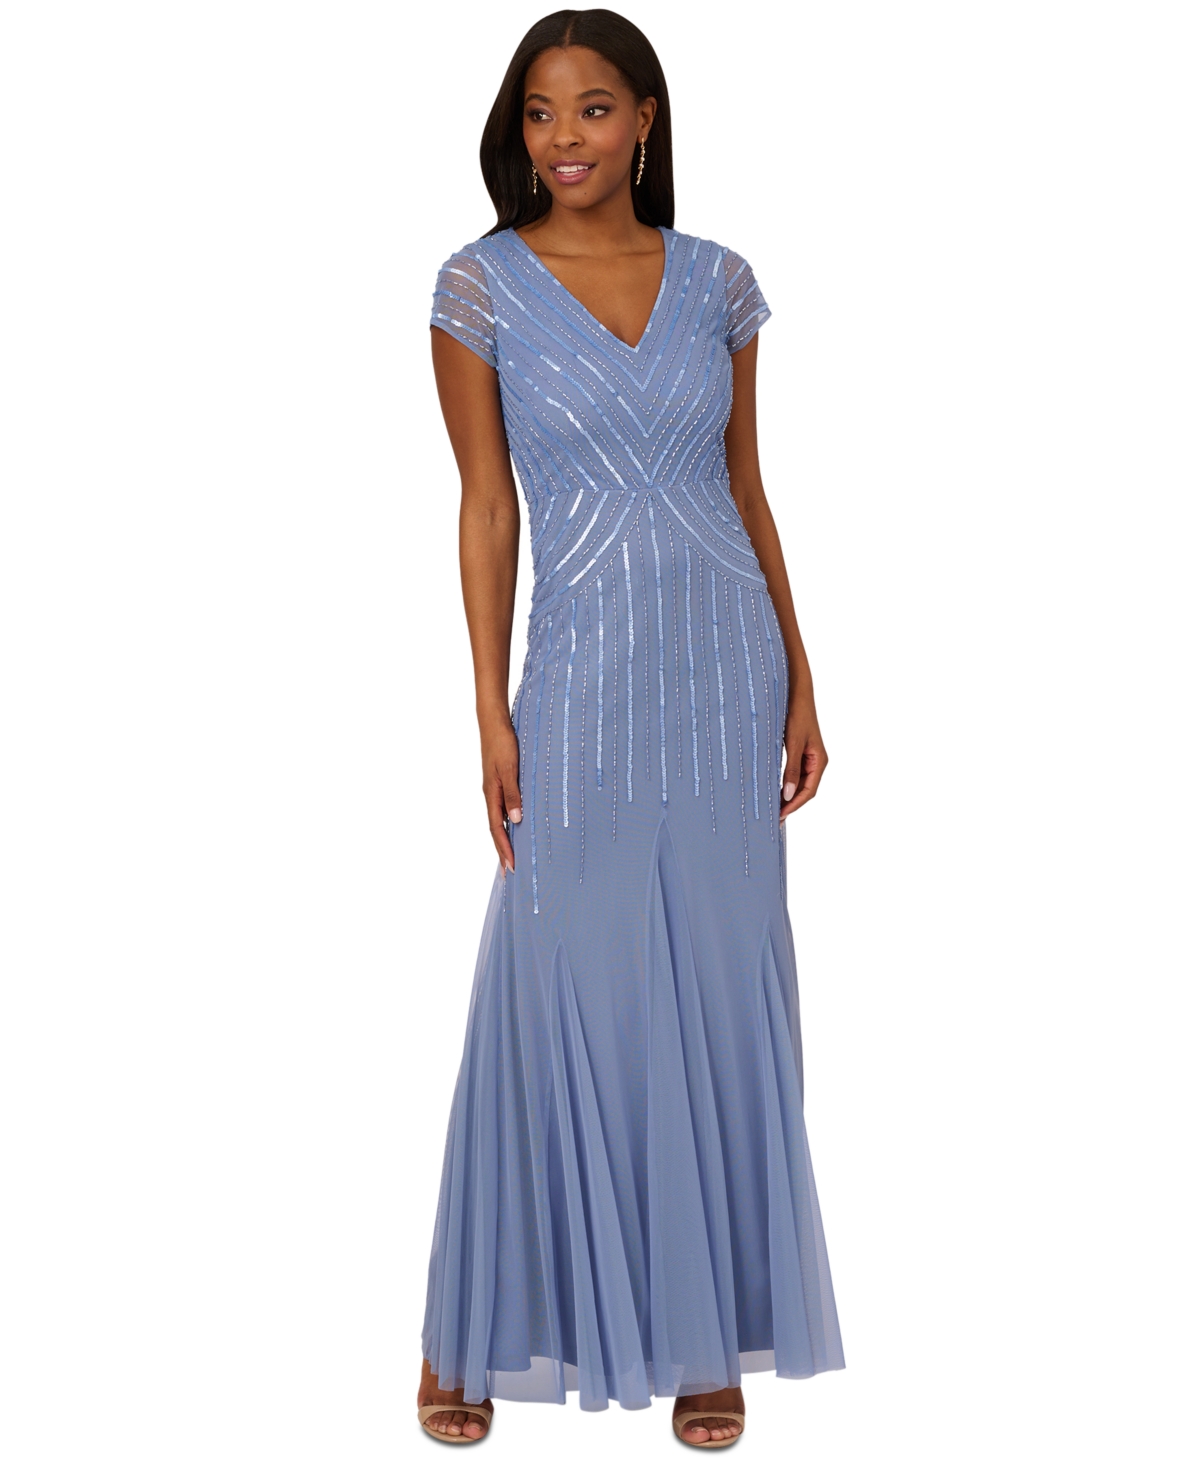 Women's Beaded V-Neck Mermaid Dress - French Blue